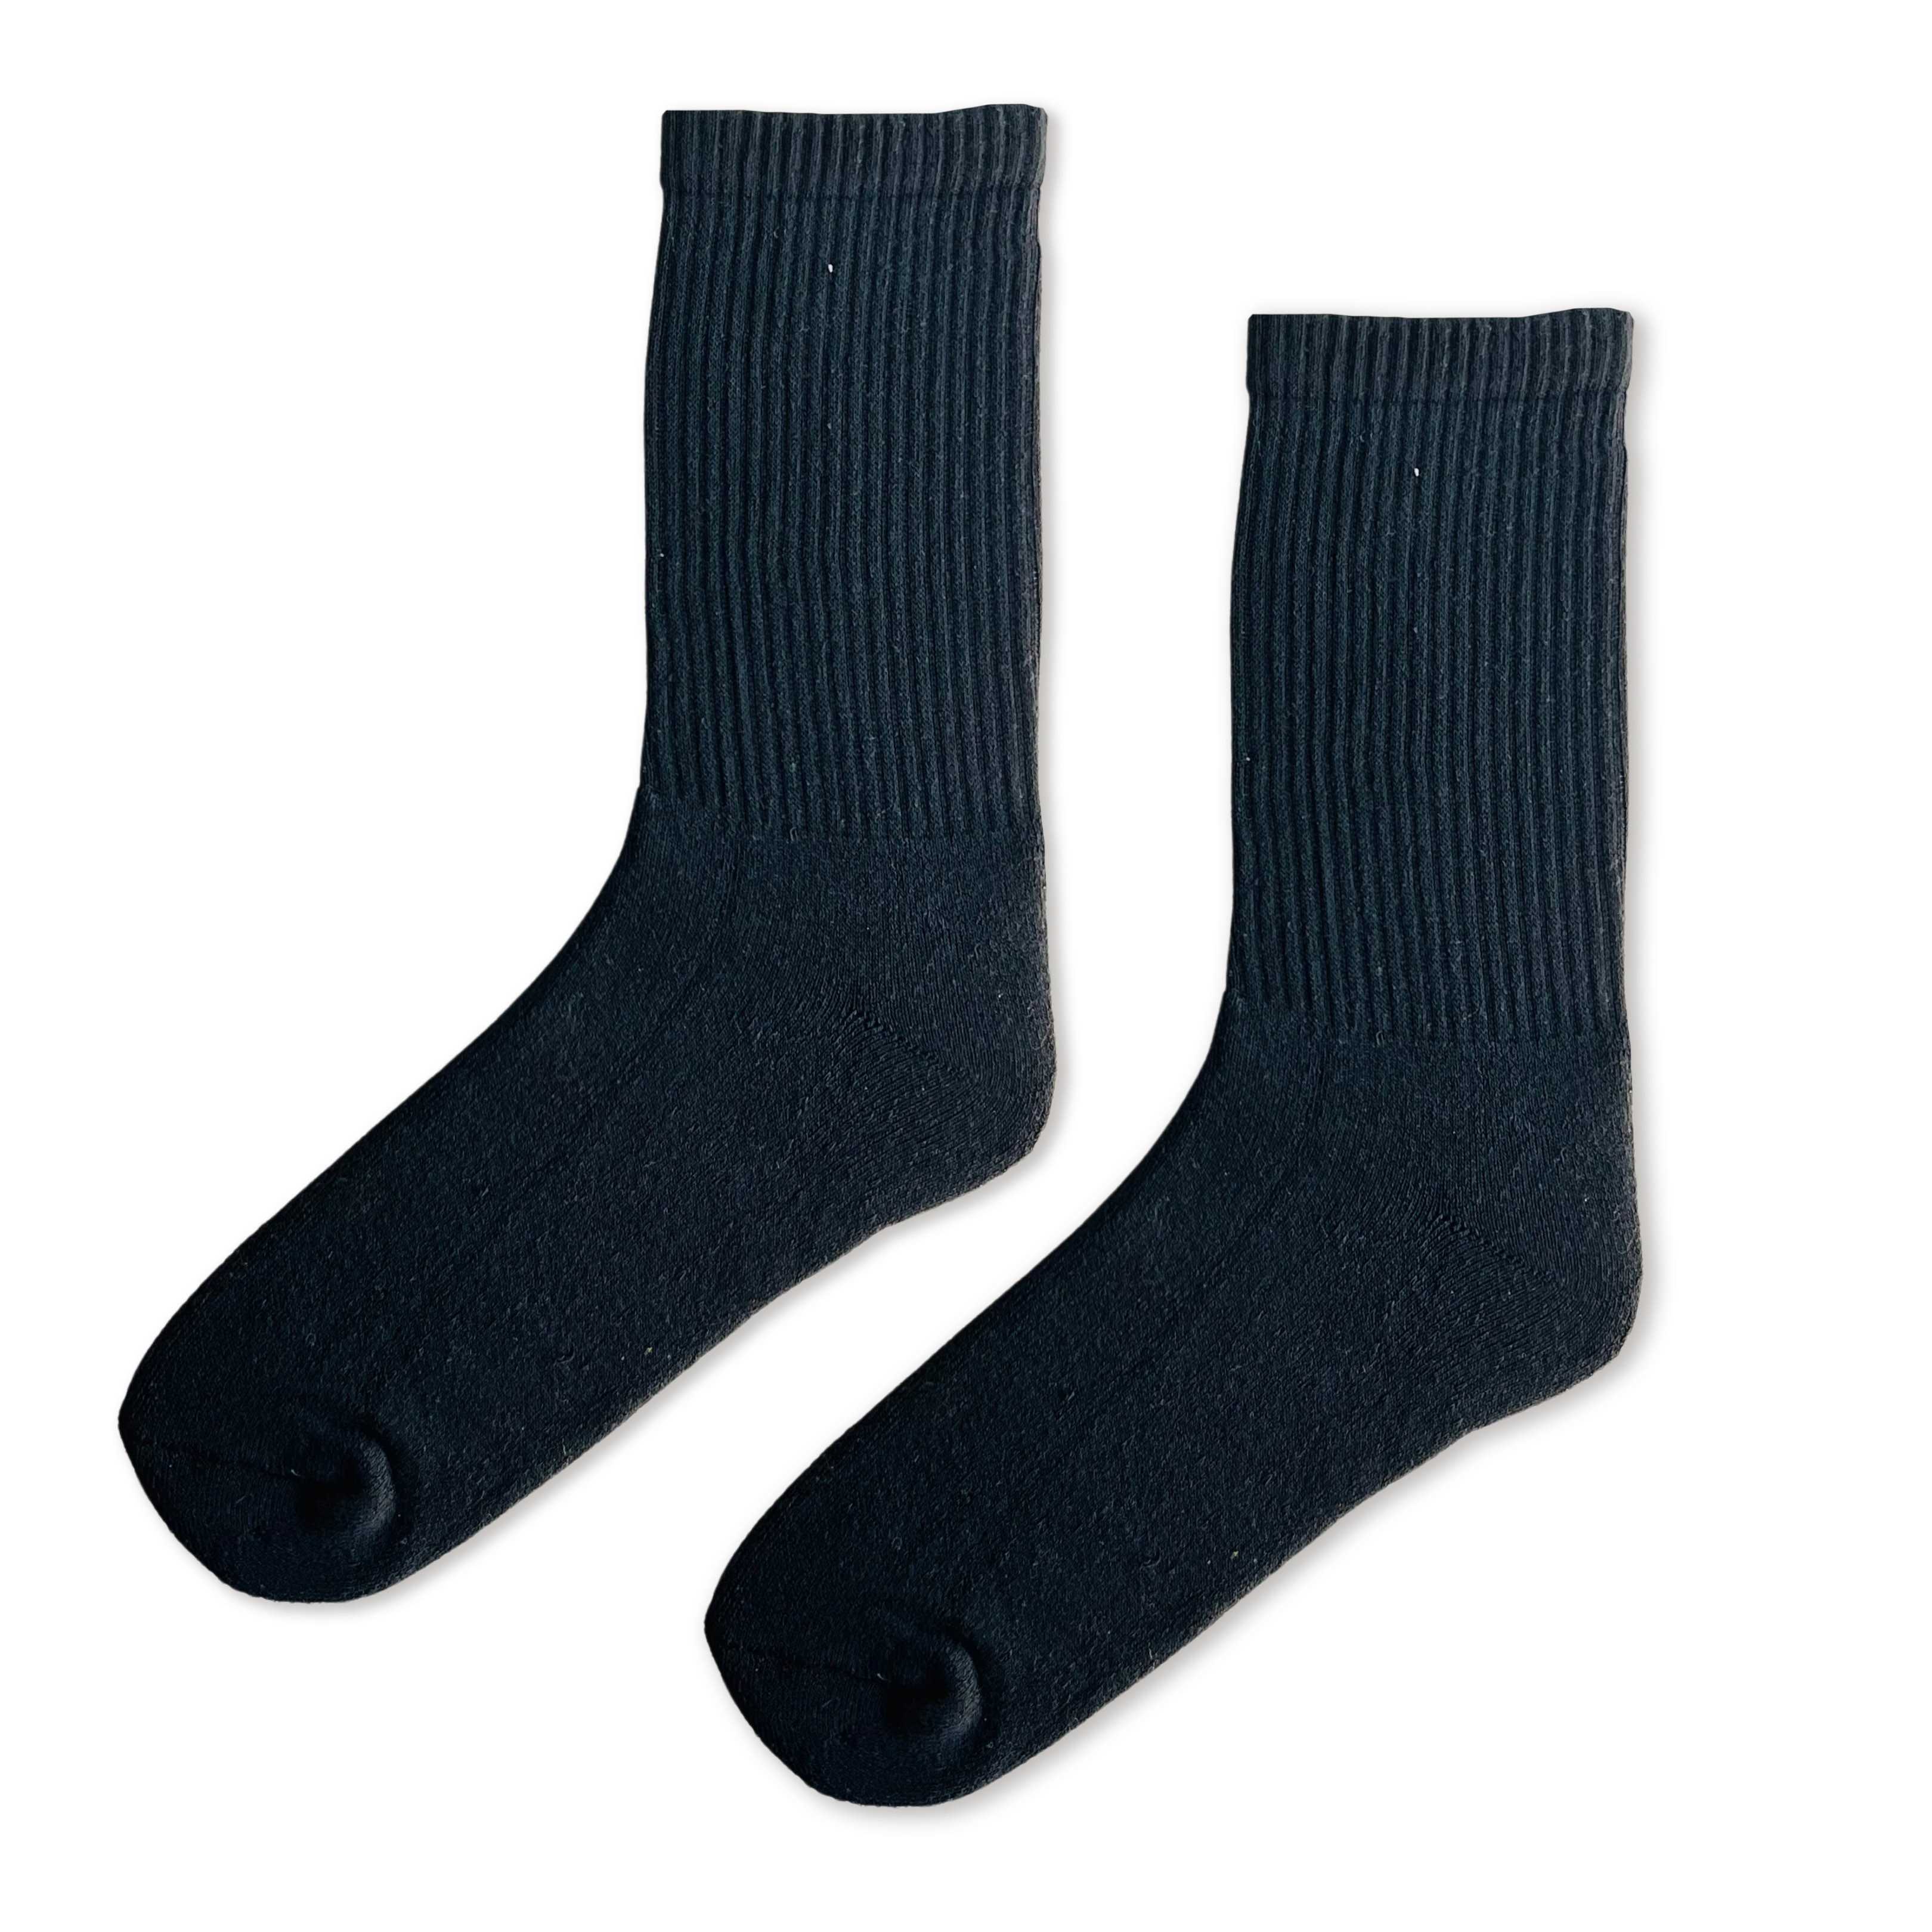 Düz Siyah Erkek Havlu Çorap (42-47)